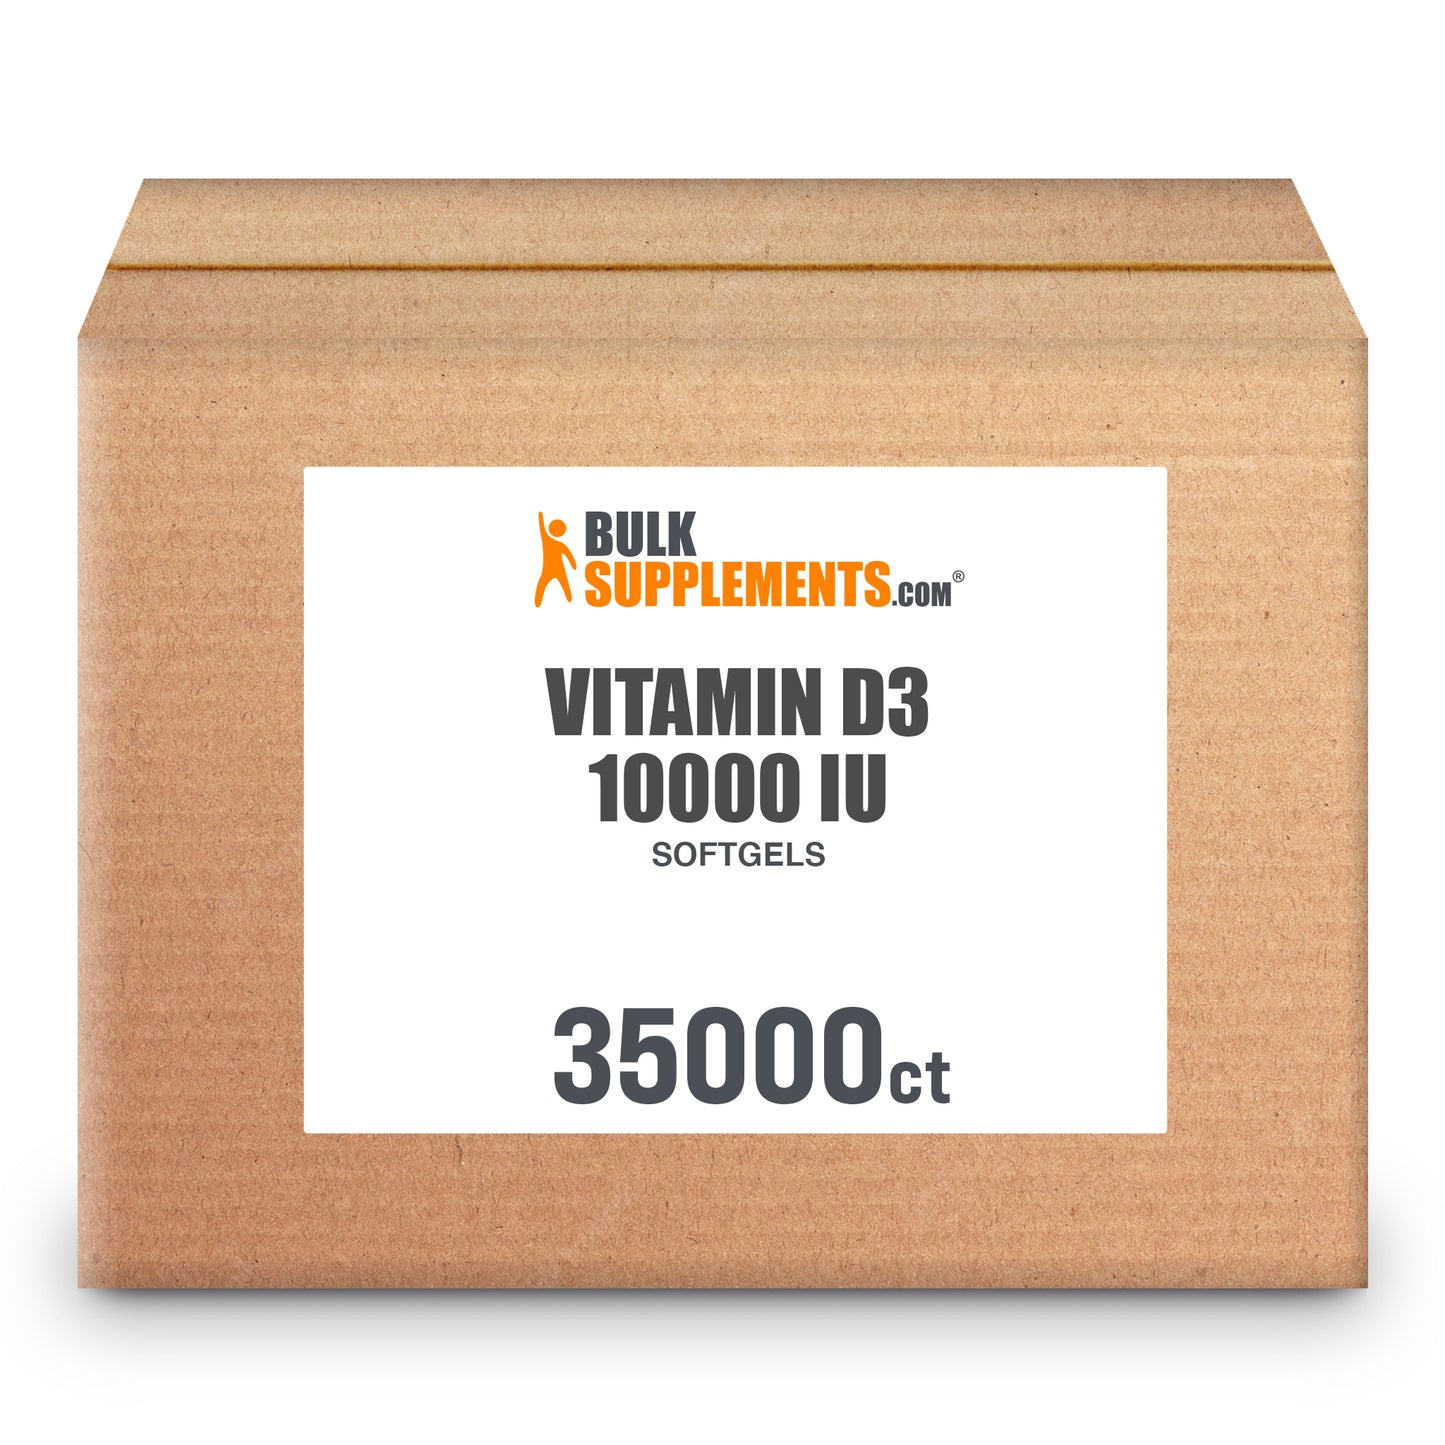 Vitamin D3 Softgels 10000 IU 35,000 ct box